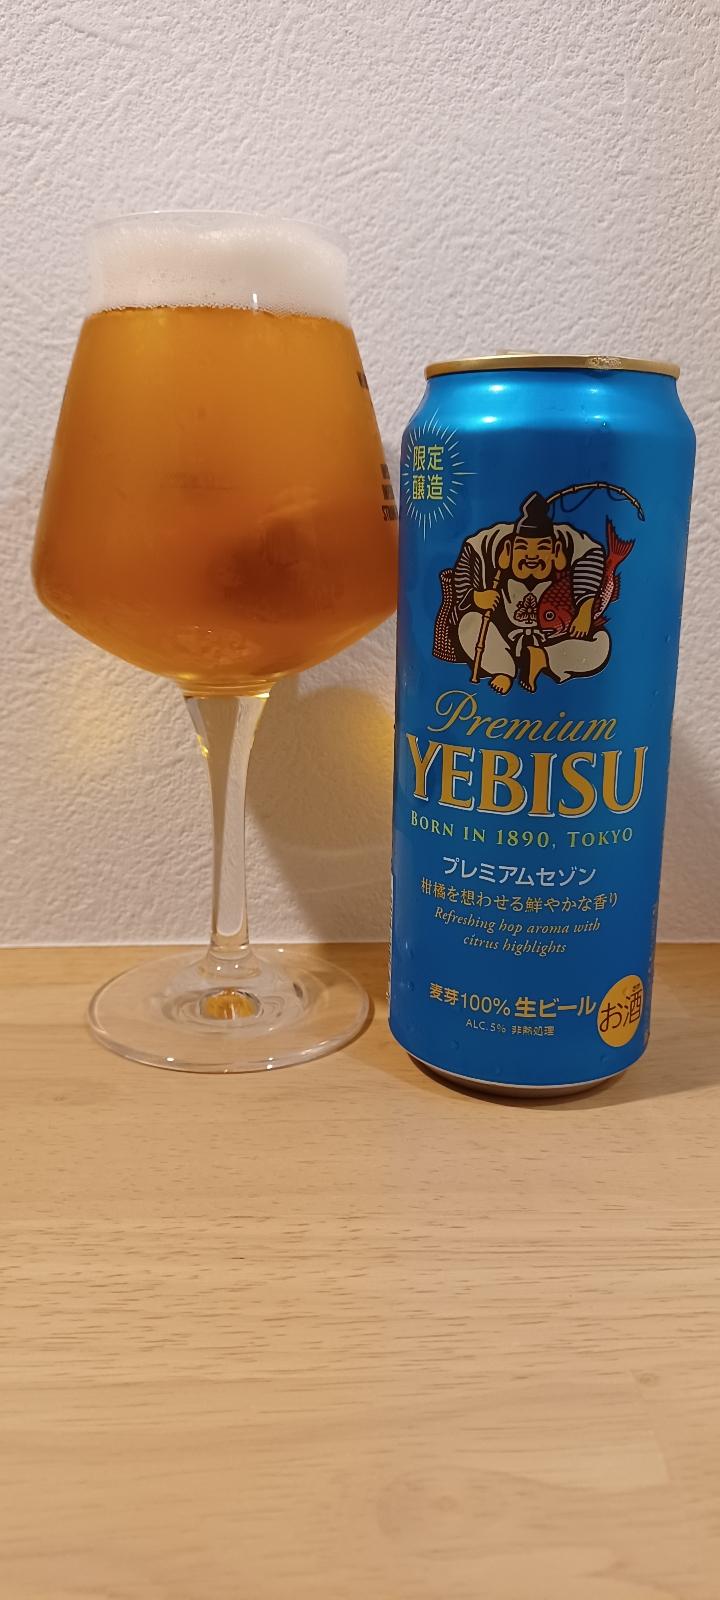 Yebisu Premium Saison (2021)